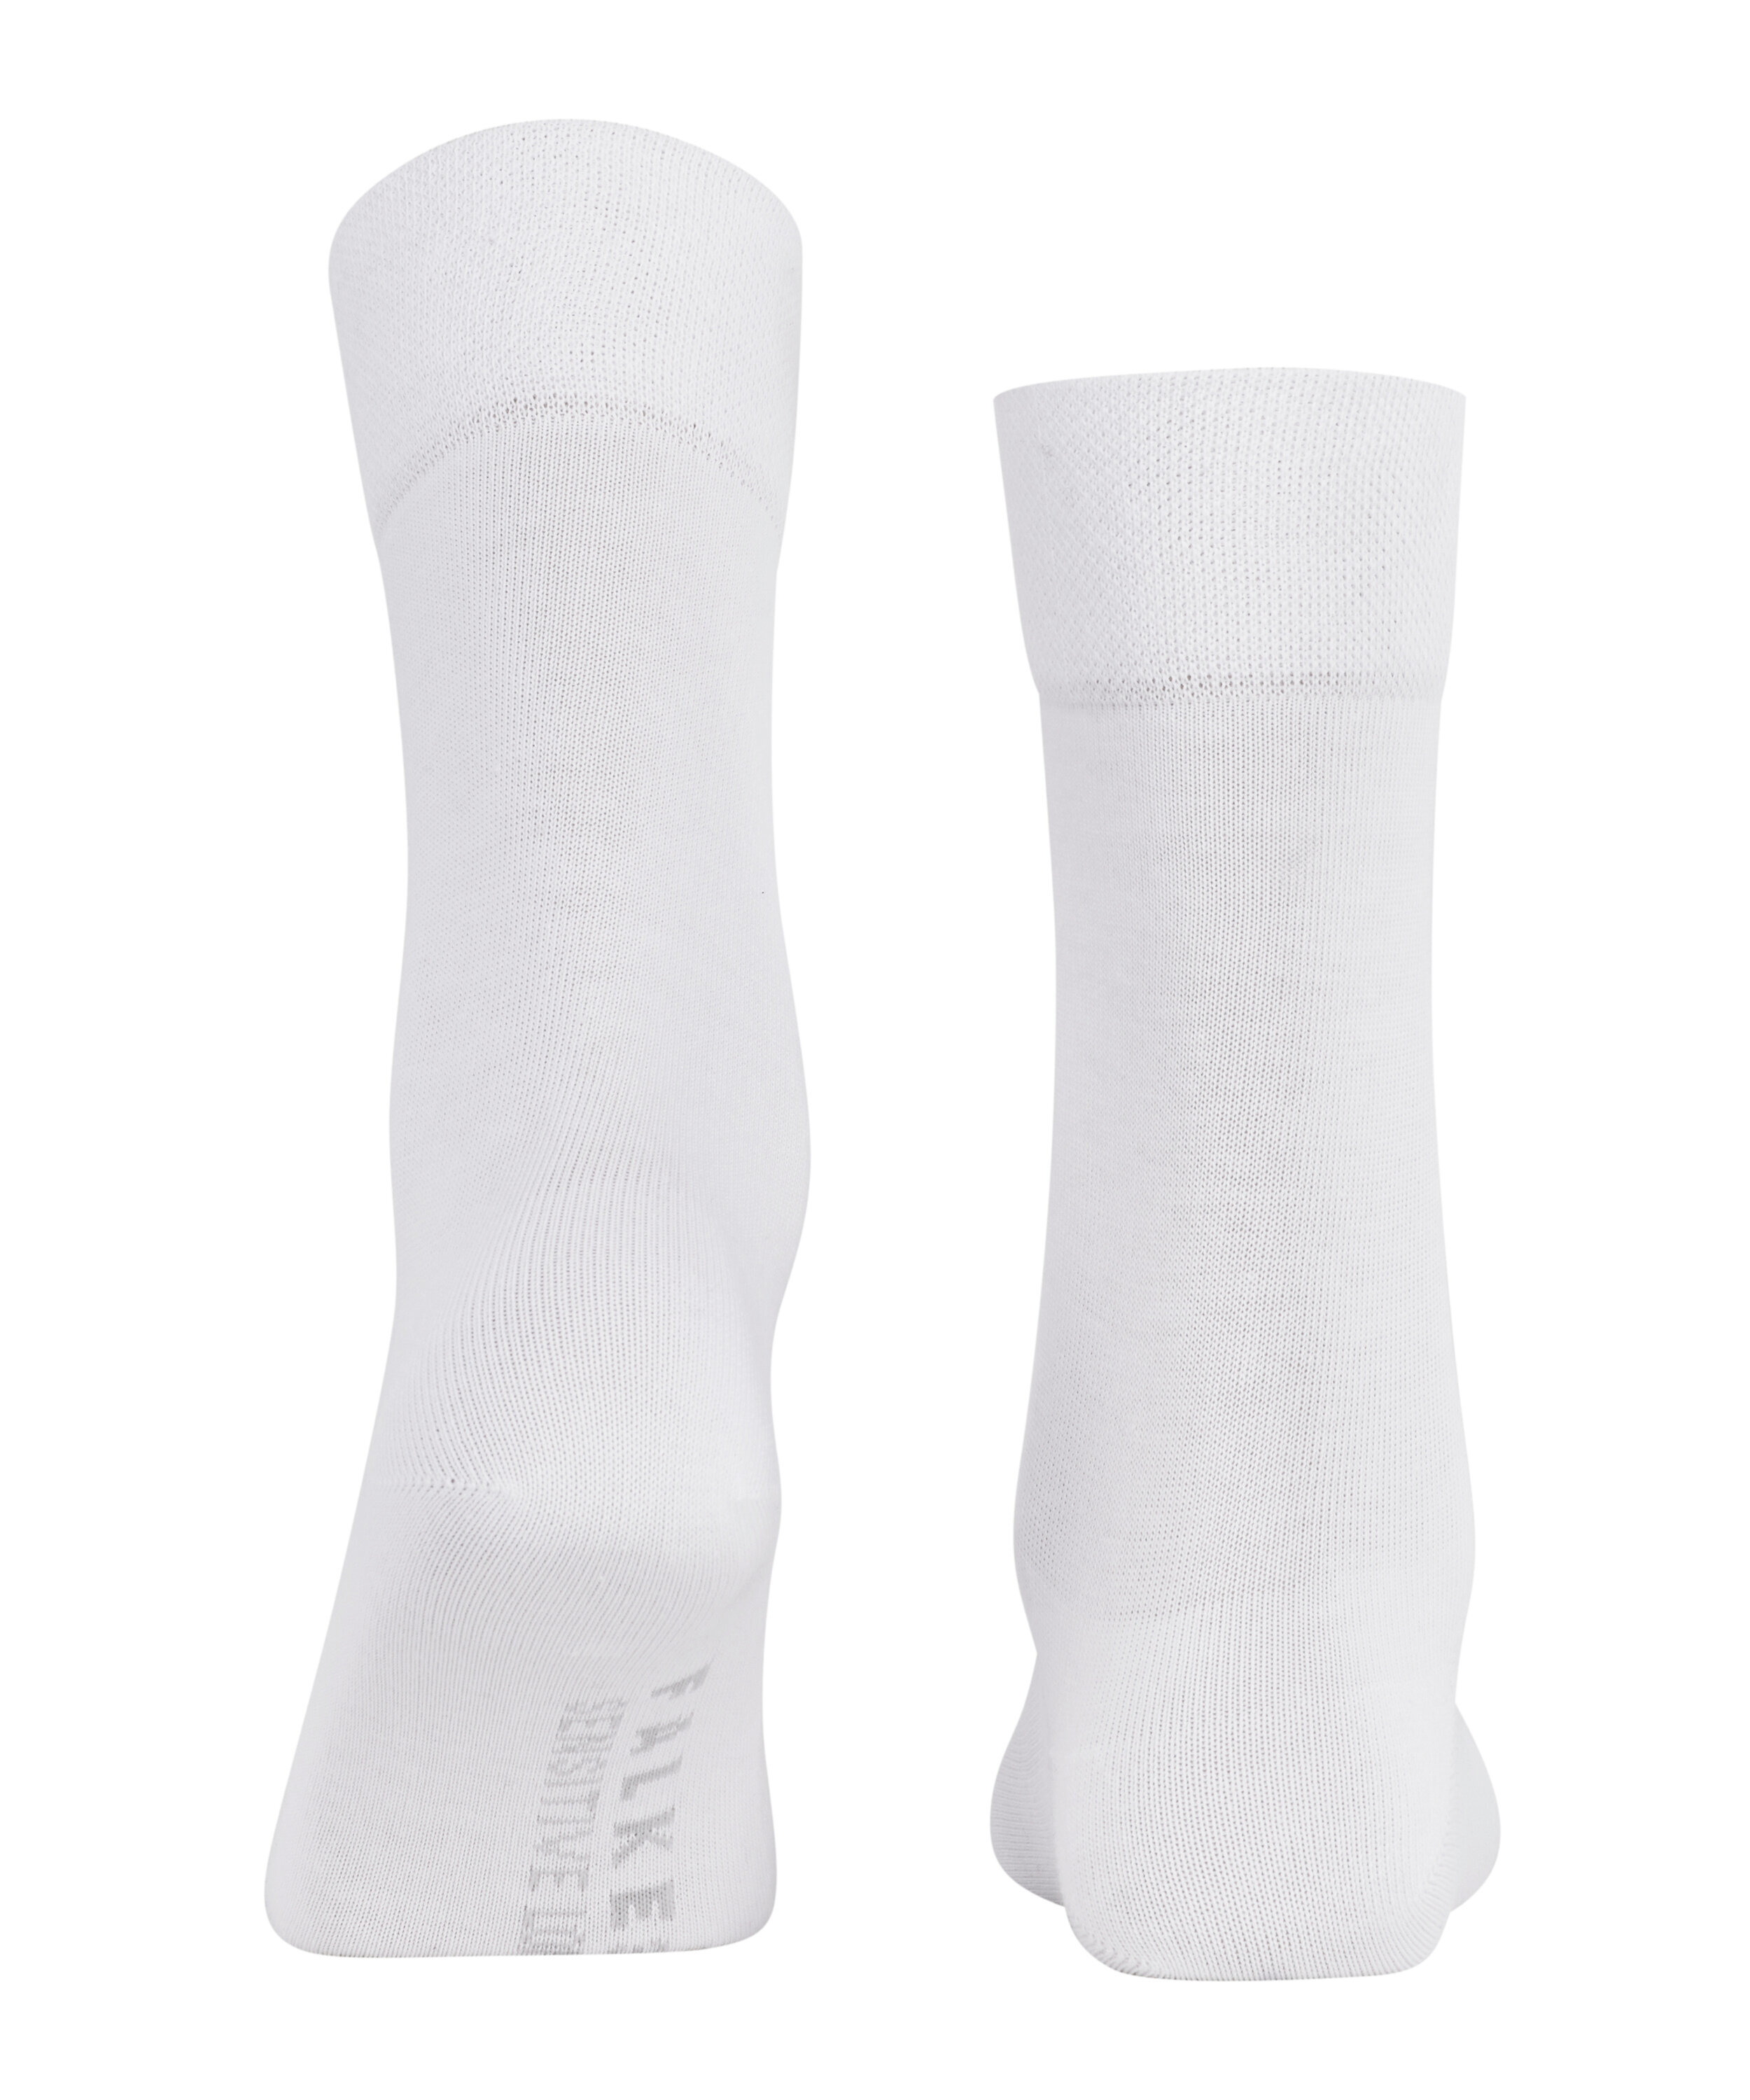 Damen-Socken "Sensitive London" mit druckfreiem Bündchen aus elastischer Baumwolle